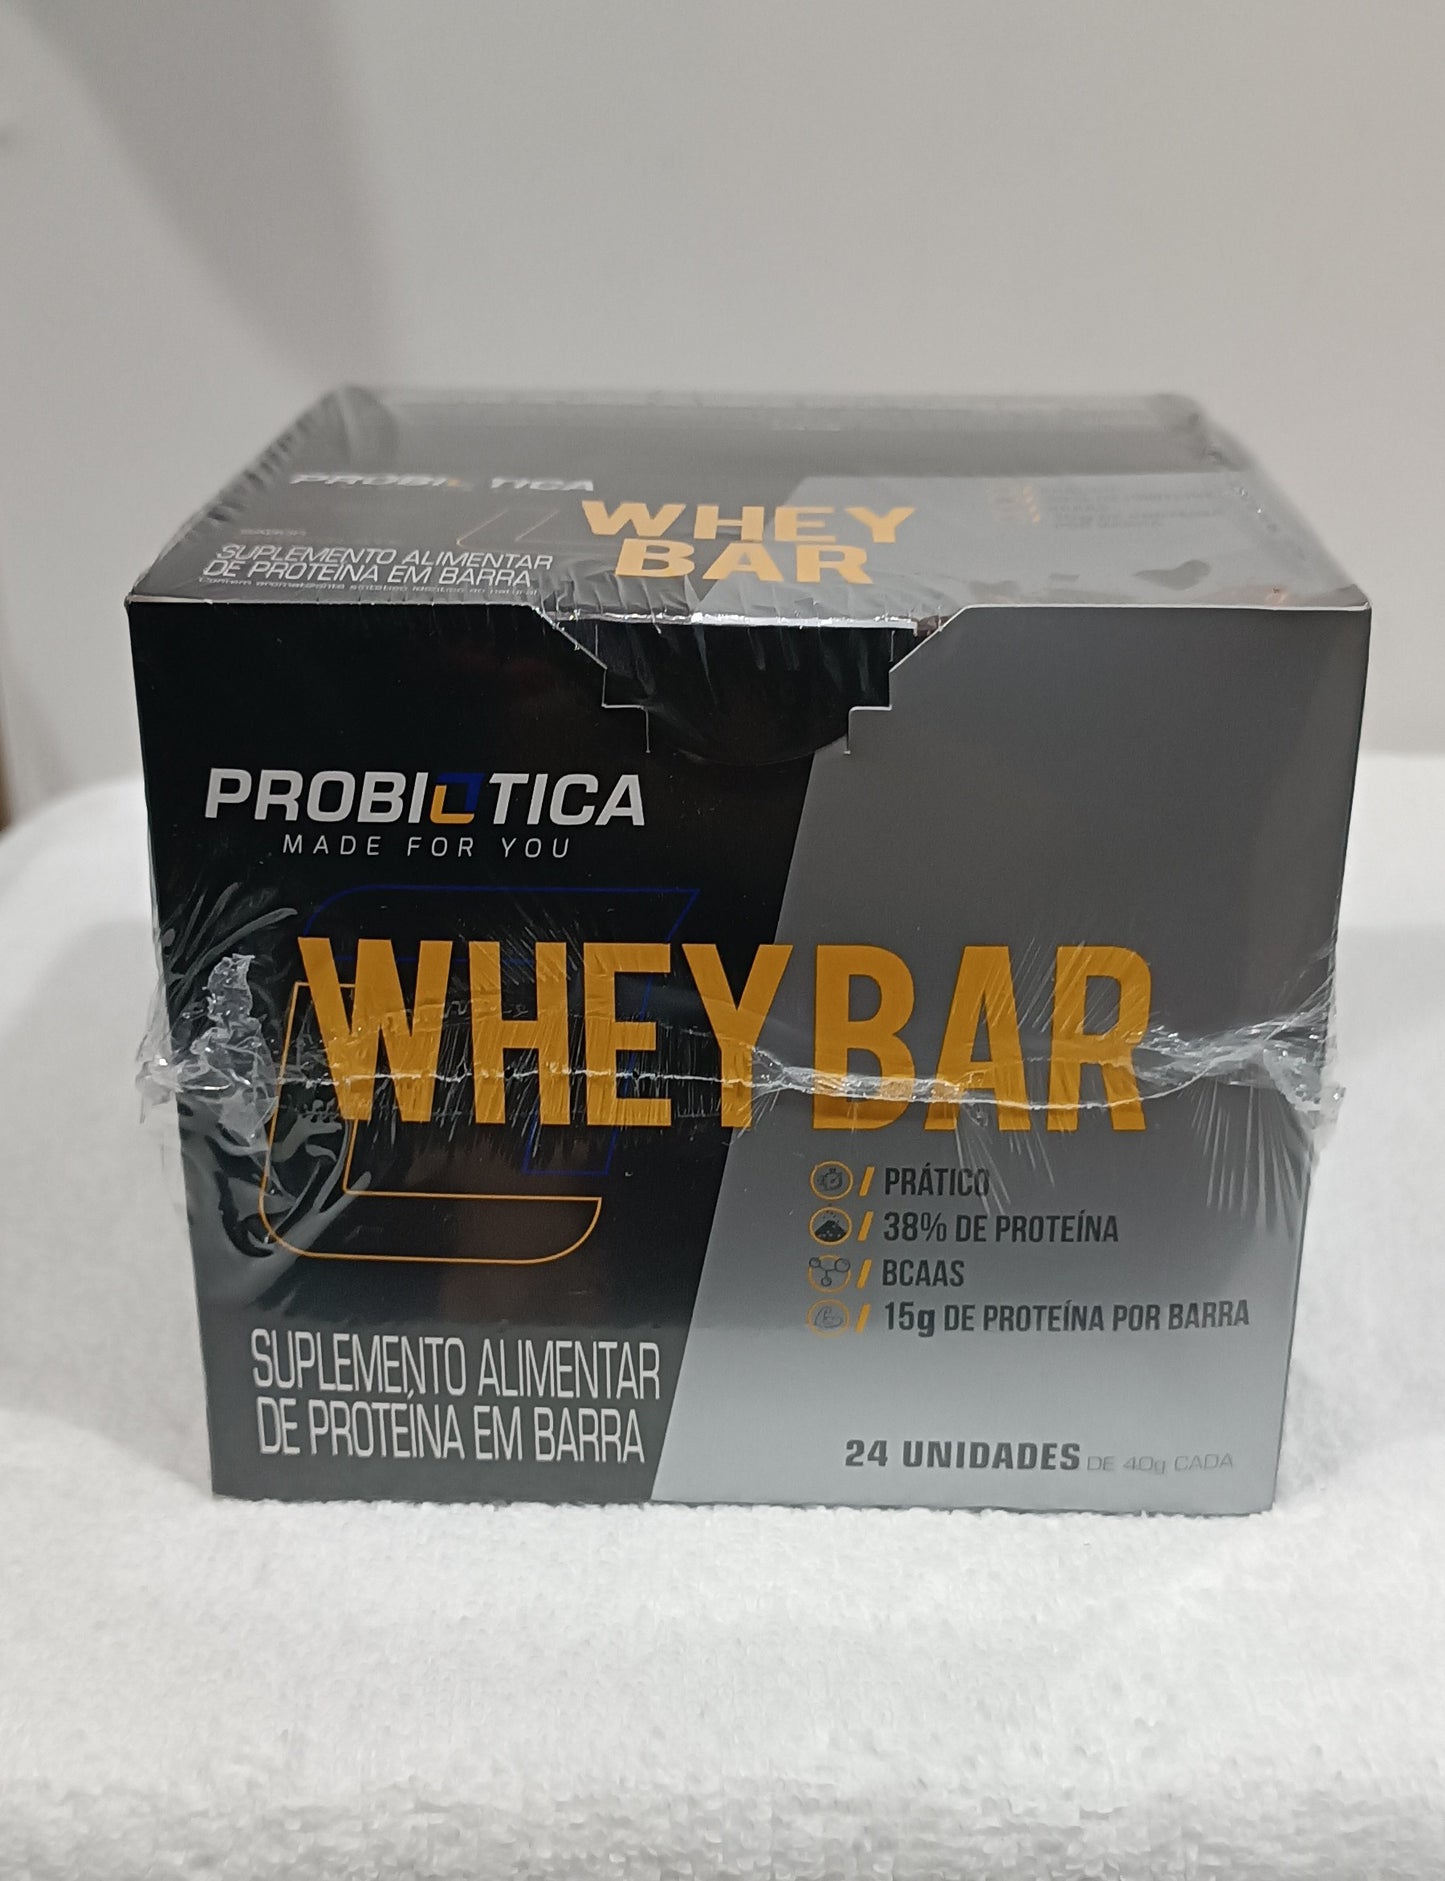 Wheybar chocolate probiótica 24 unidades